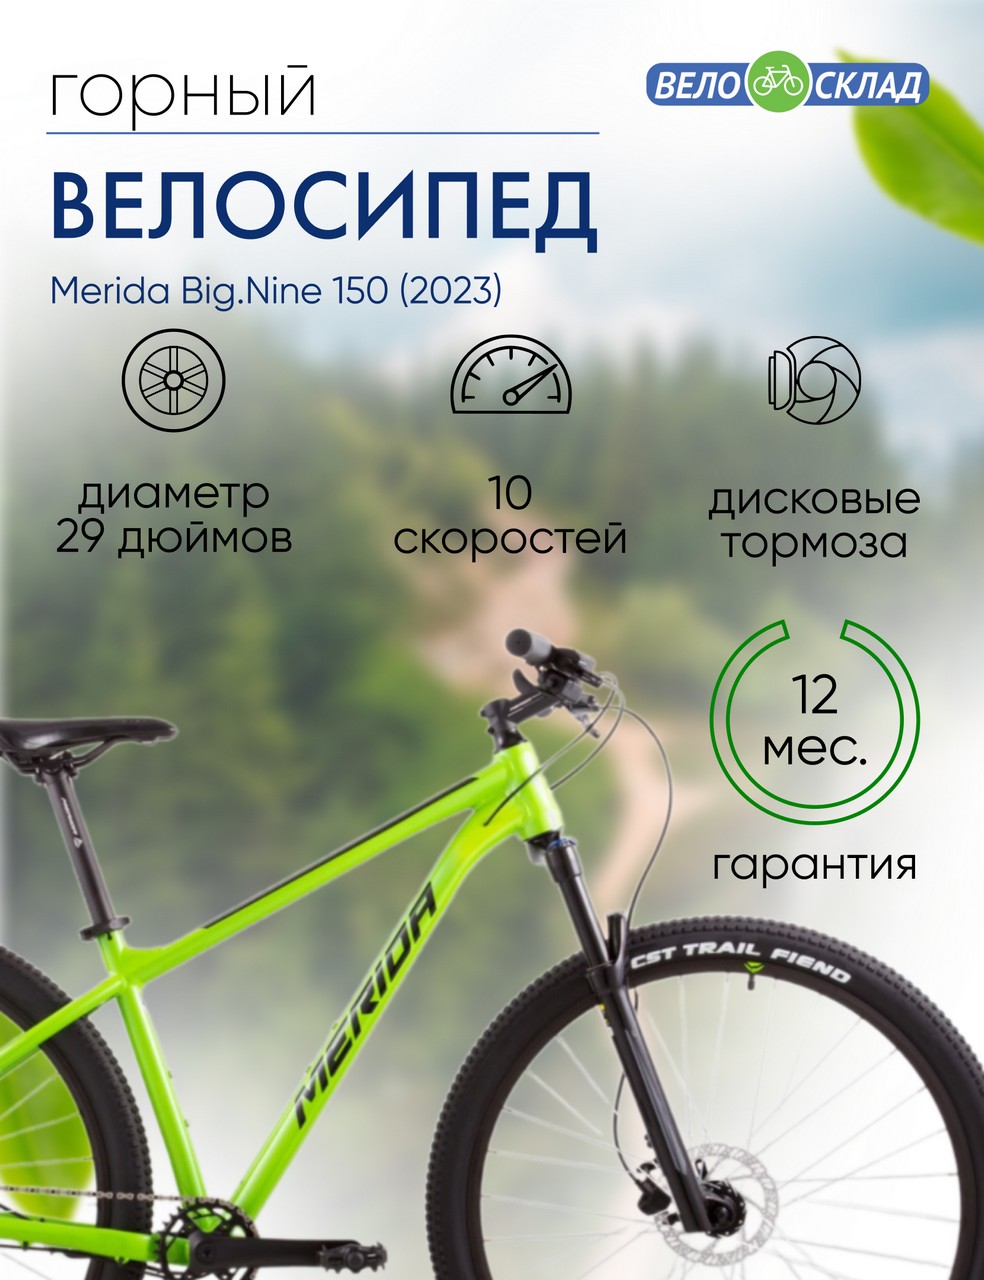 Горный велосипед Merida Big.Nine 150, год 2023, цвет Зеленый-Черный, ростовка 14.5